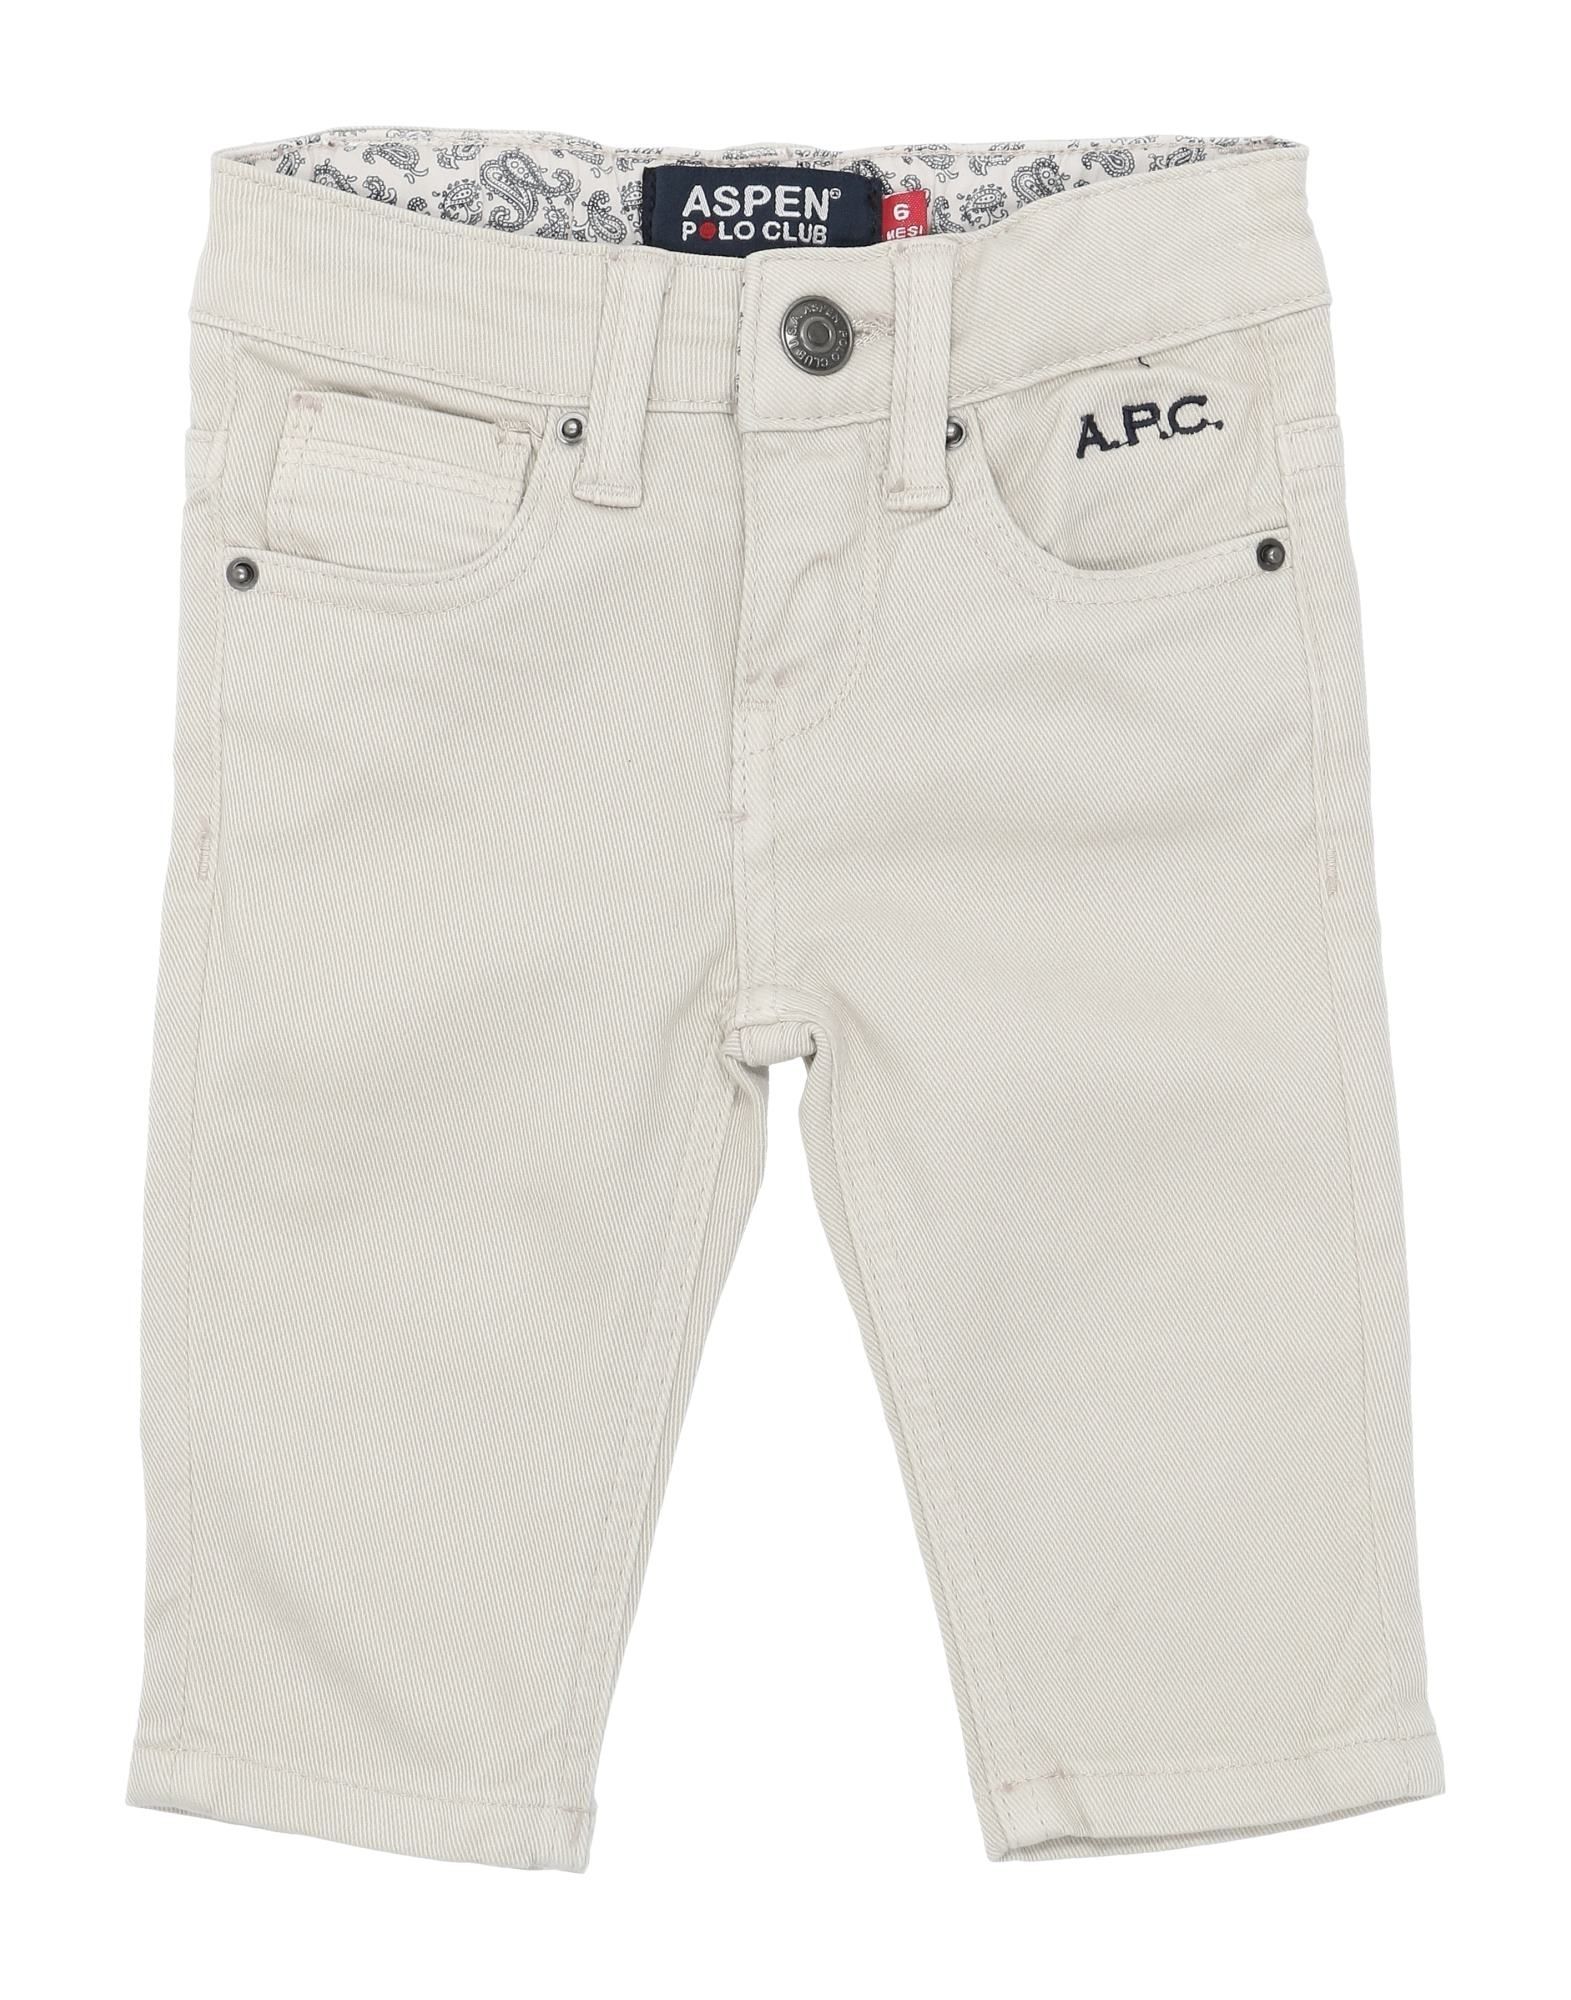 Aspen Polo Club Kids' Jeans In Light Grey